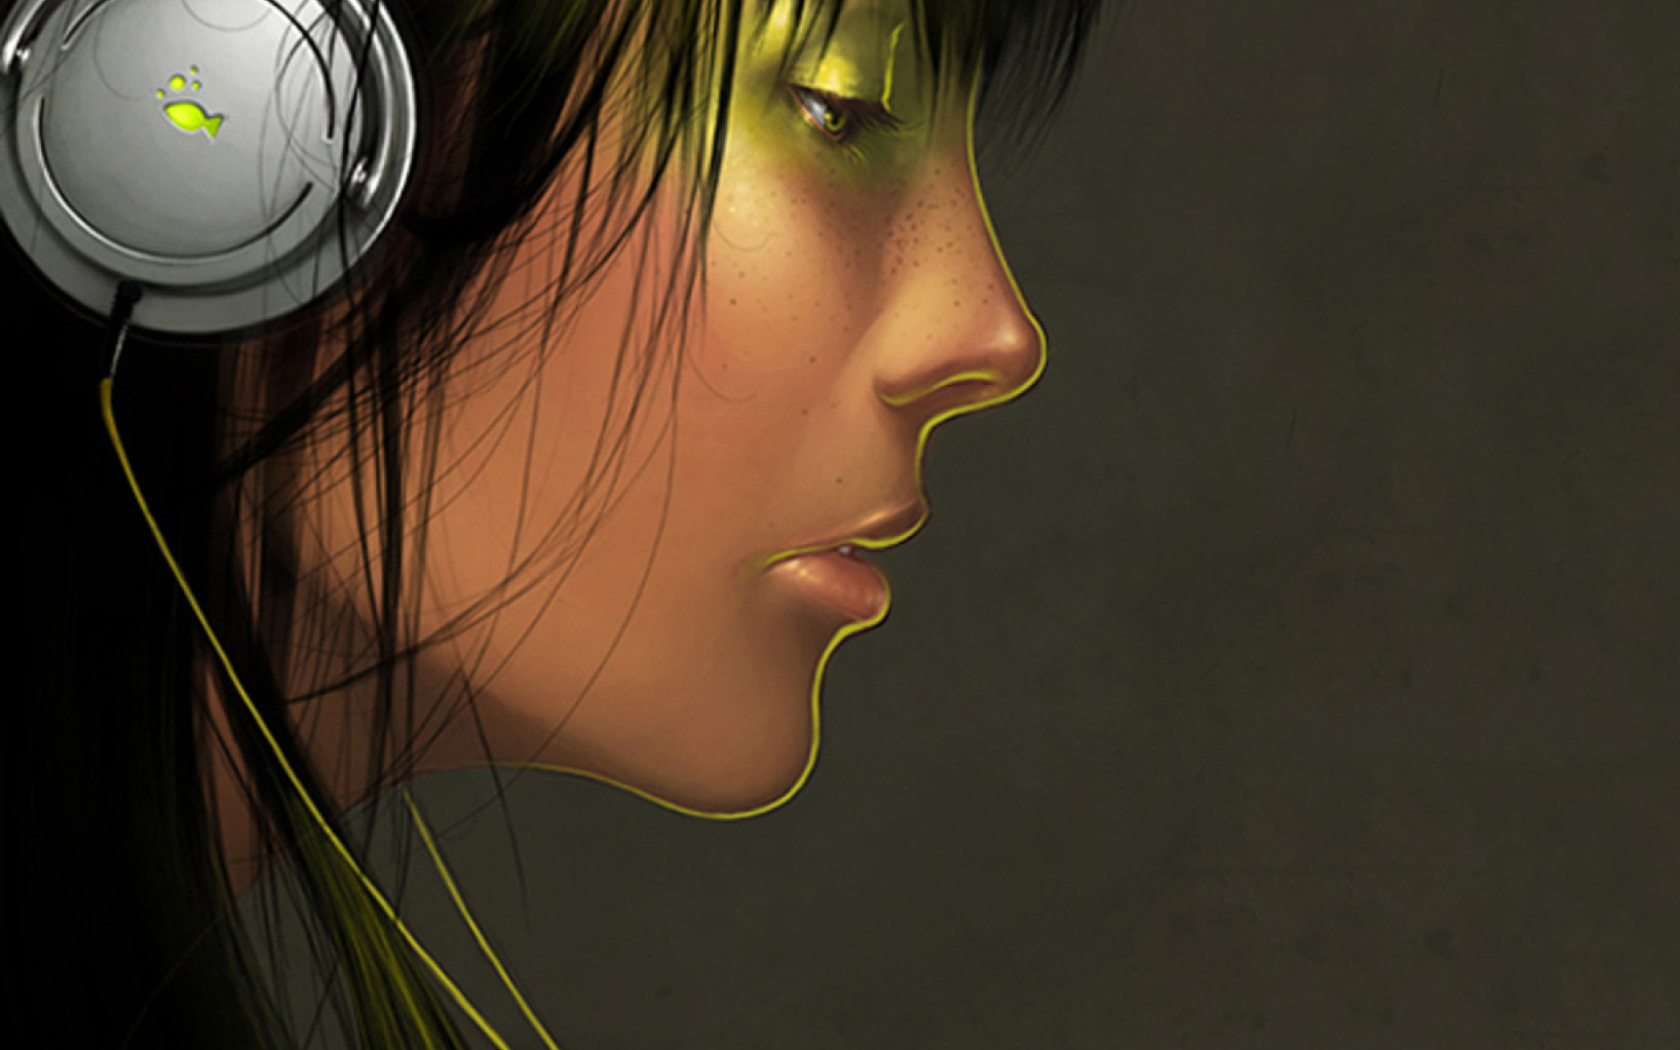 Girl With Headphones wallpaper 1680x1050